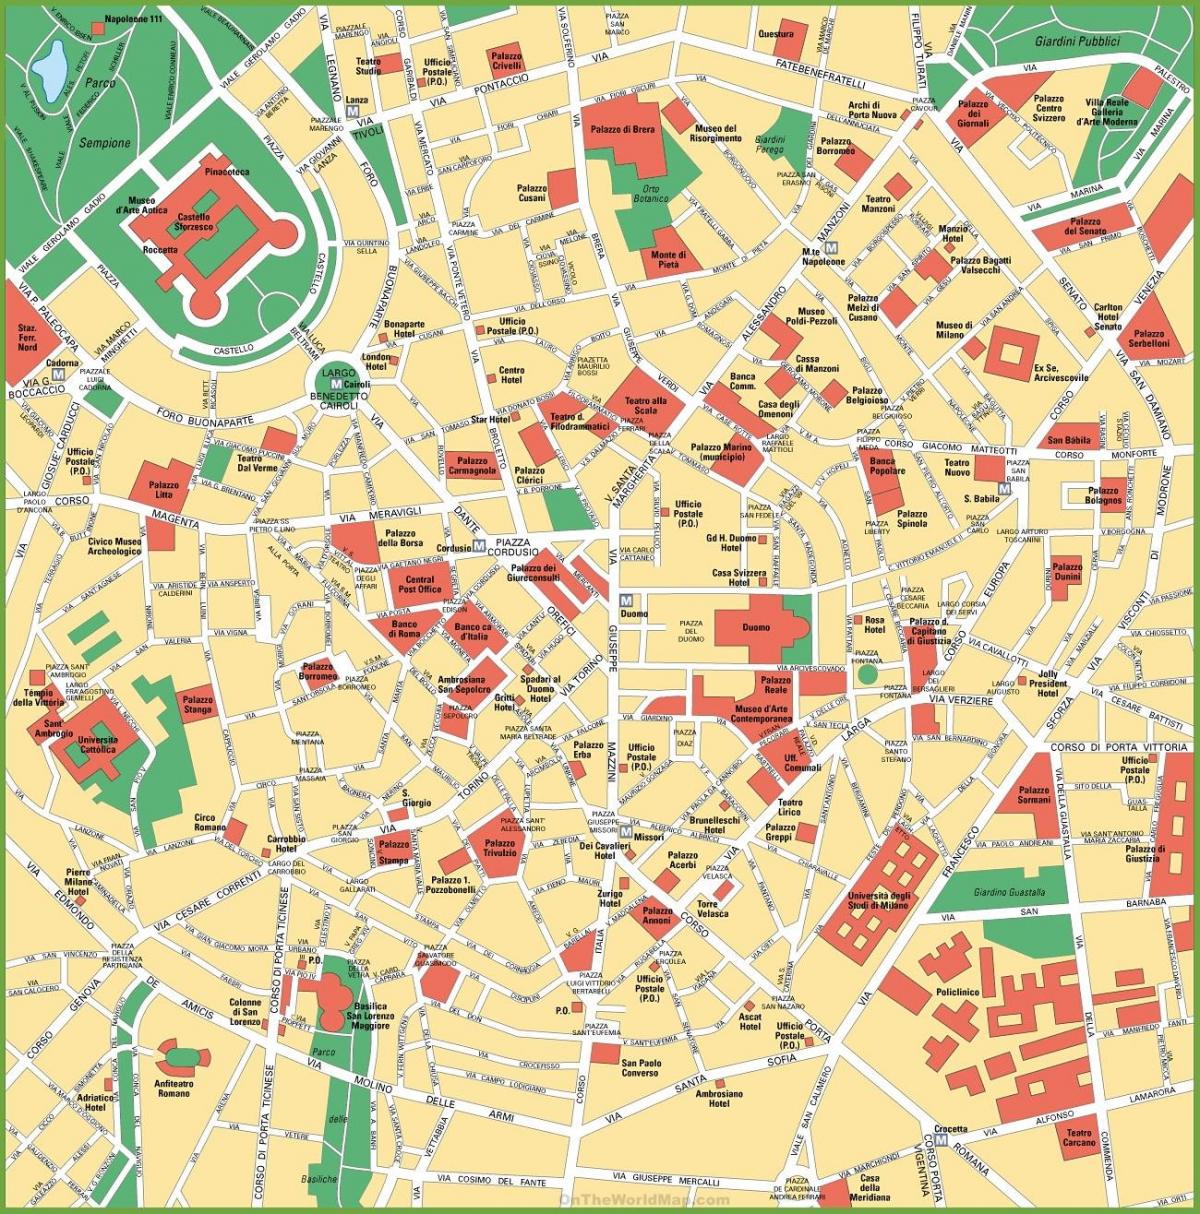 milano city center karte